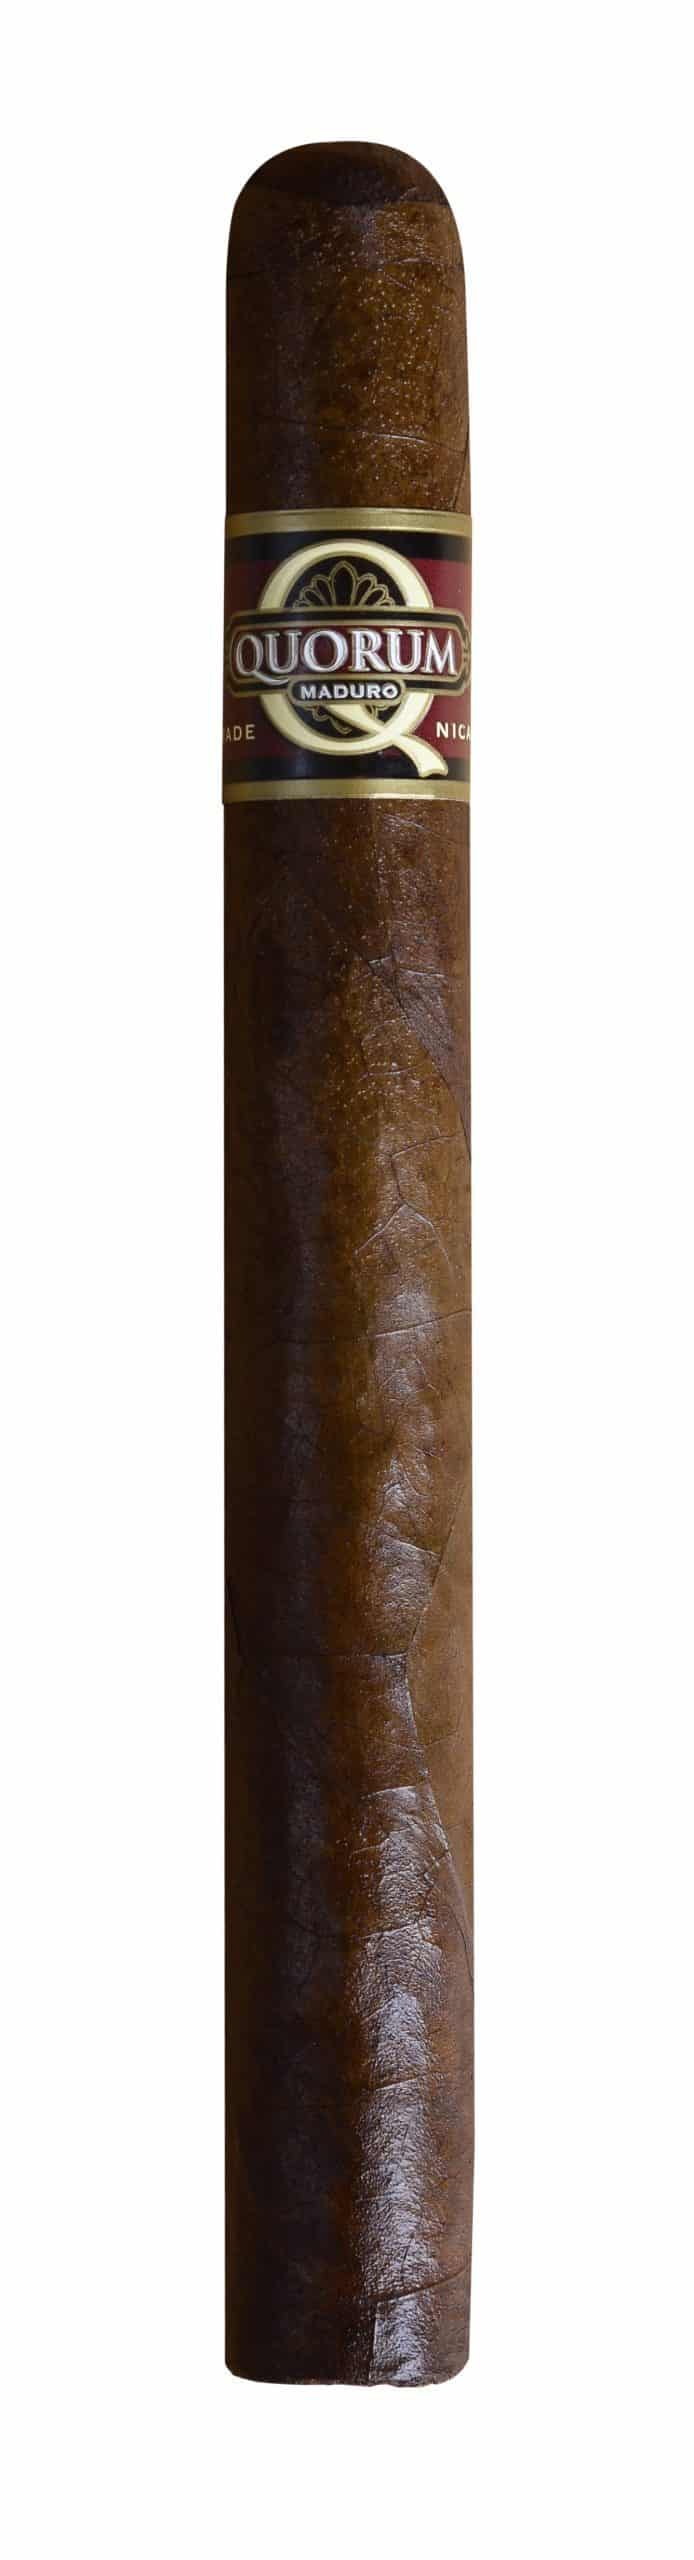 quorum maduro churchill single cigar